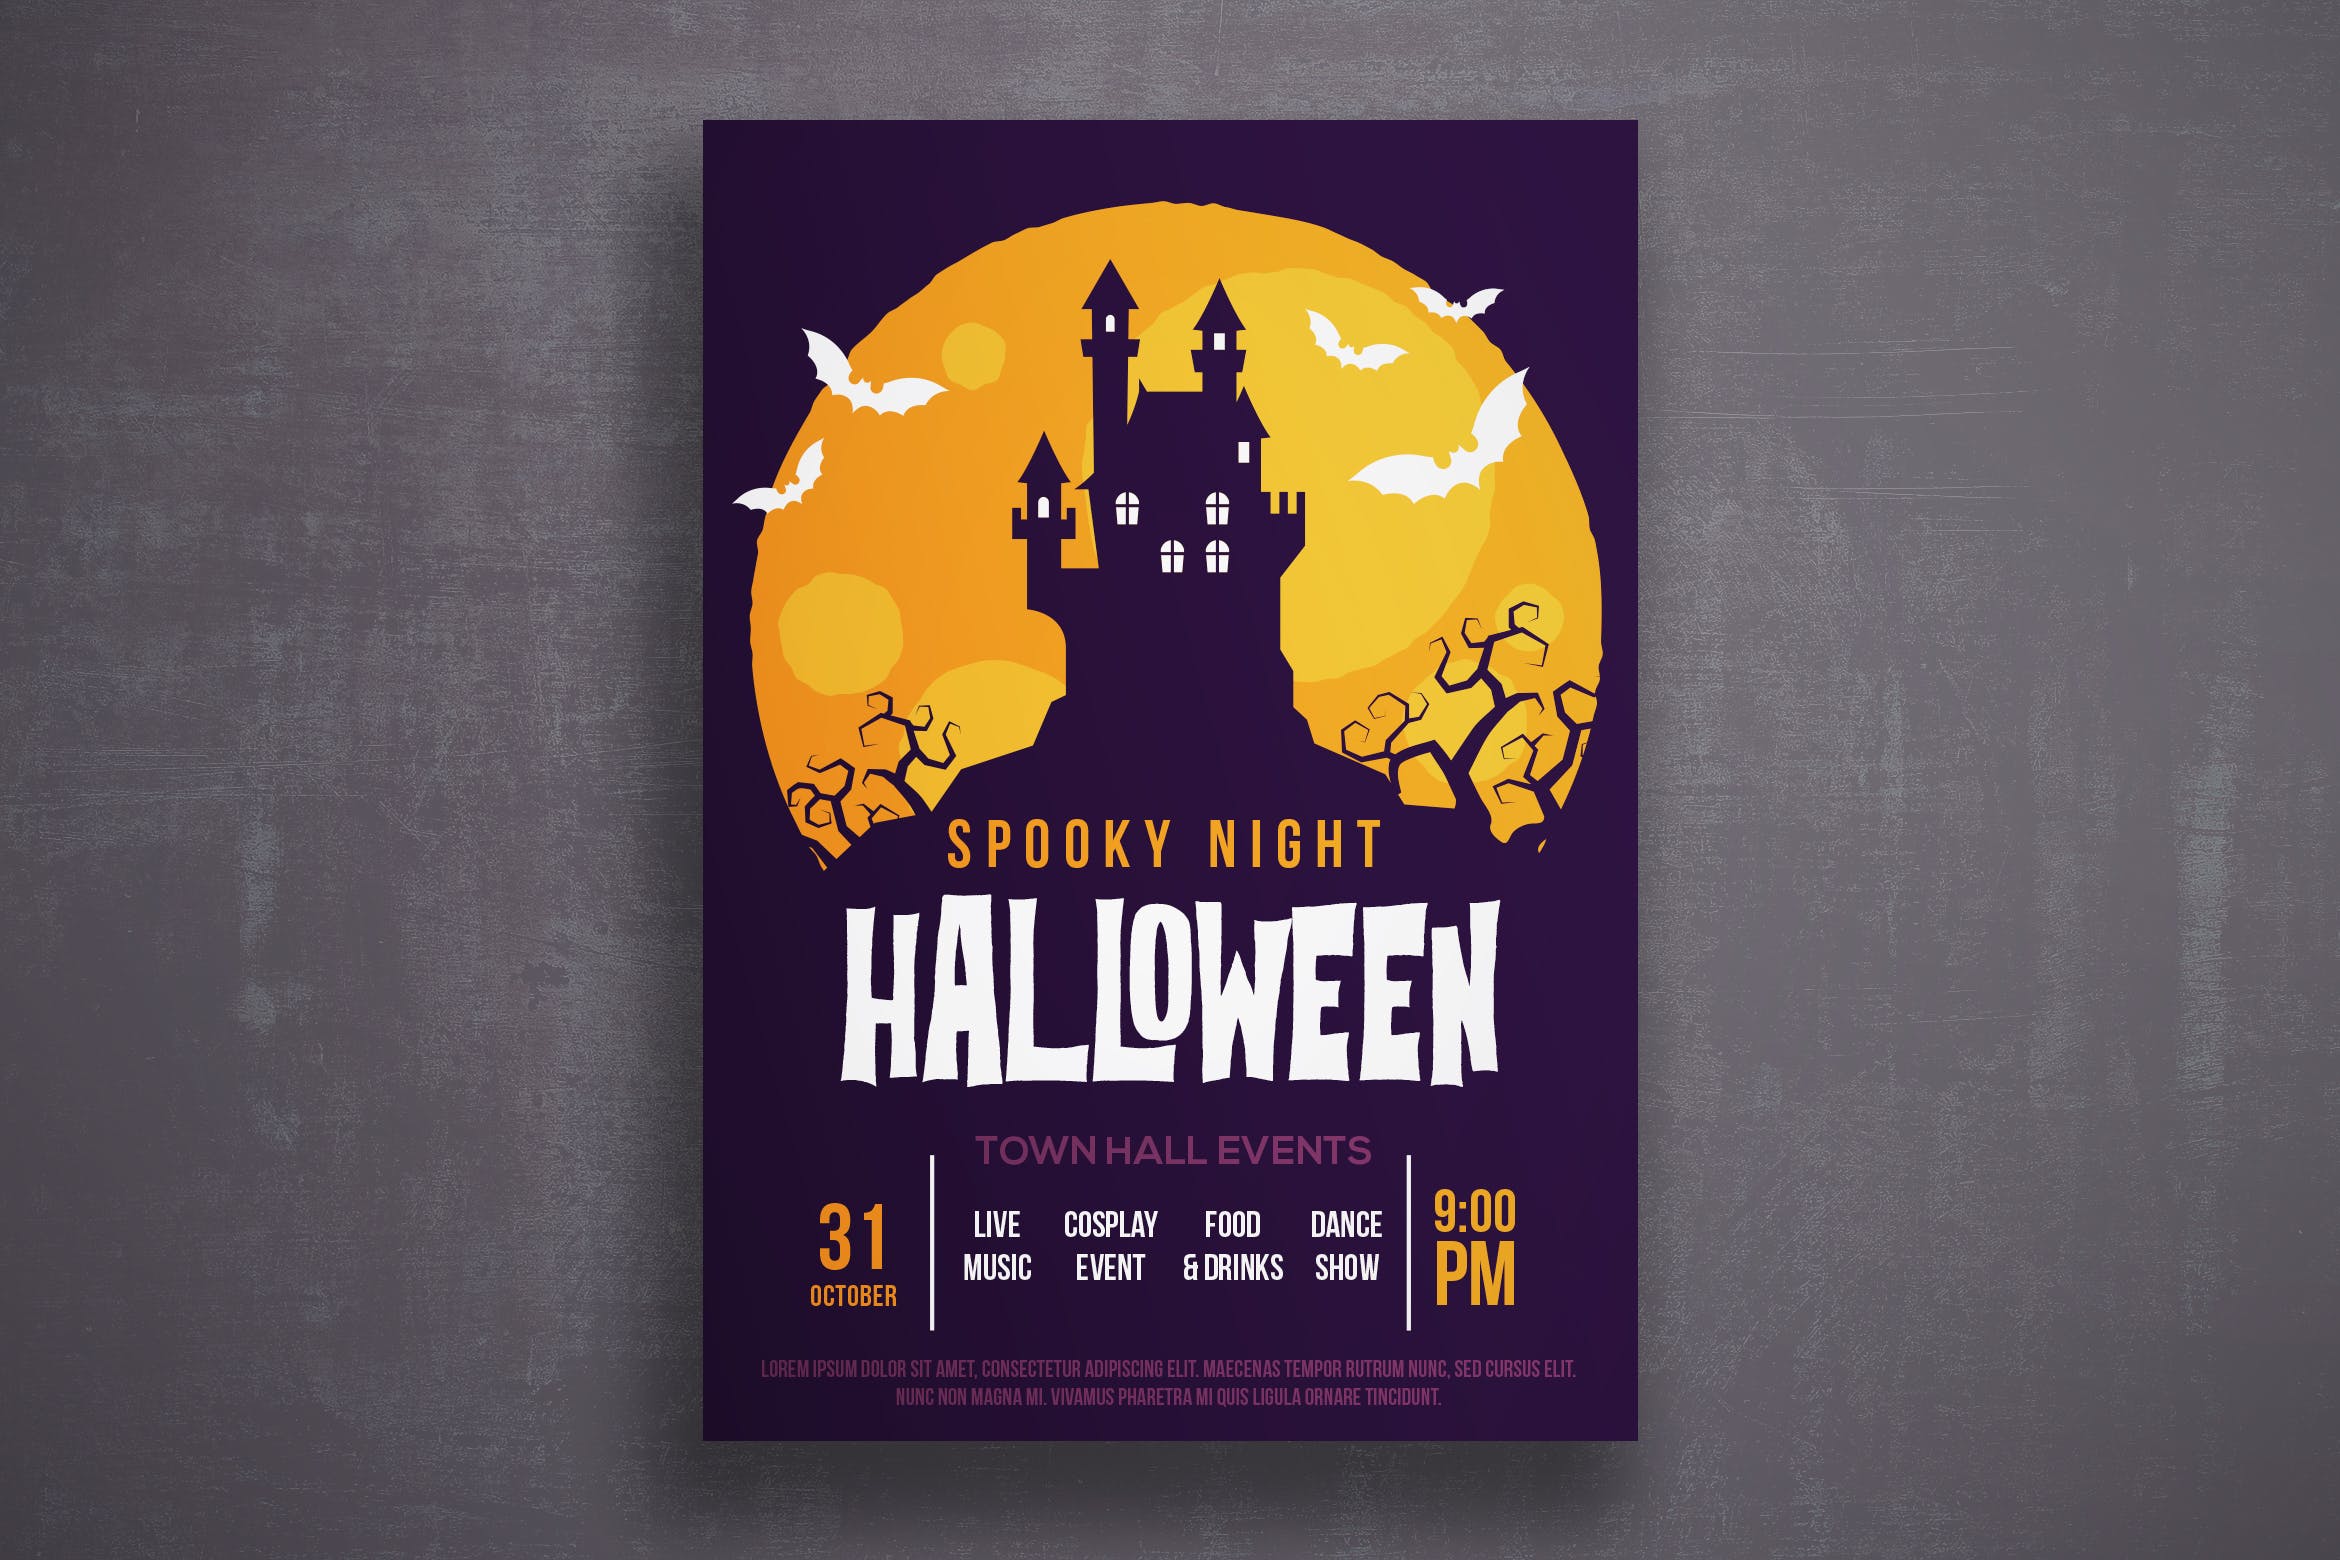 万圣节恐怖之夜活动邀请海报传单第一素材精选PSD模板v1 Halloween flyer template插图